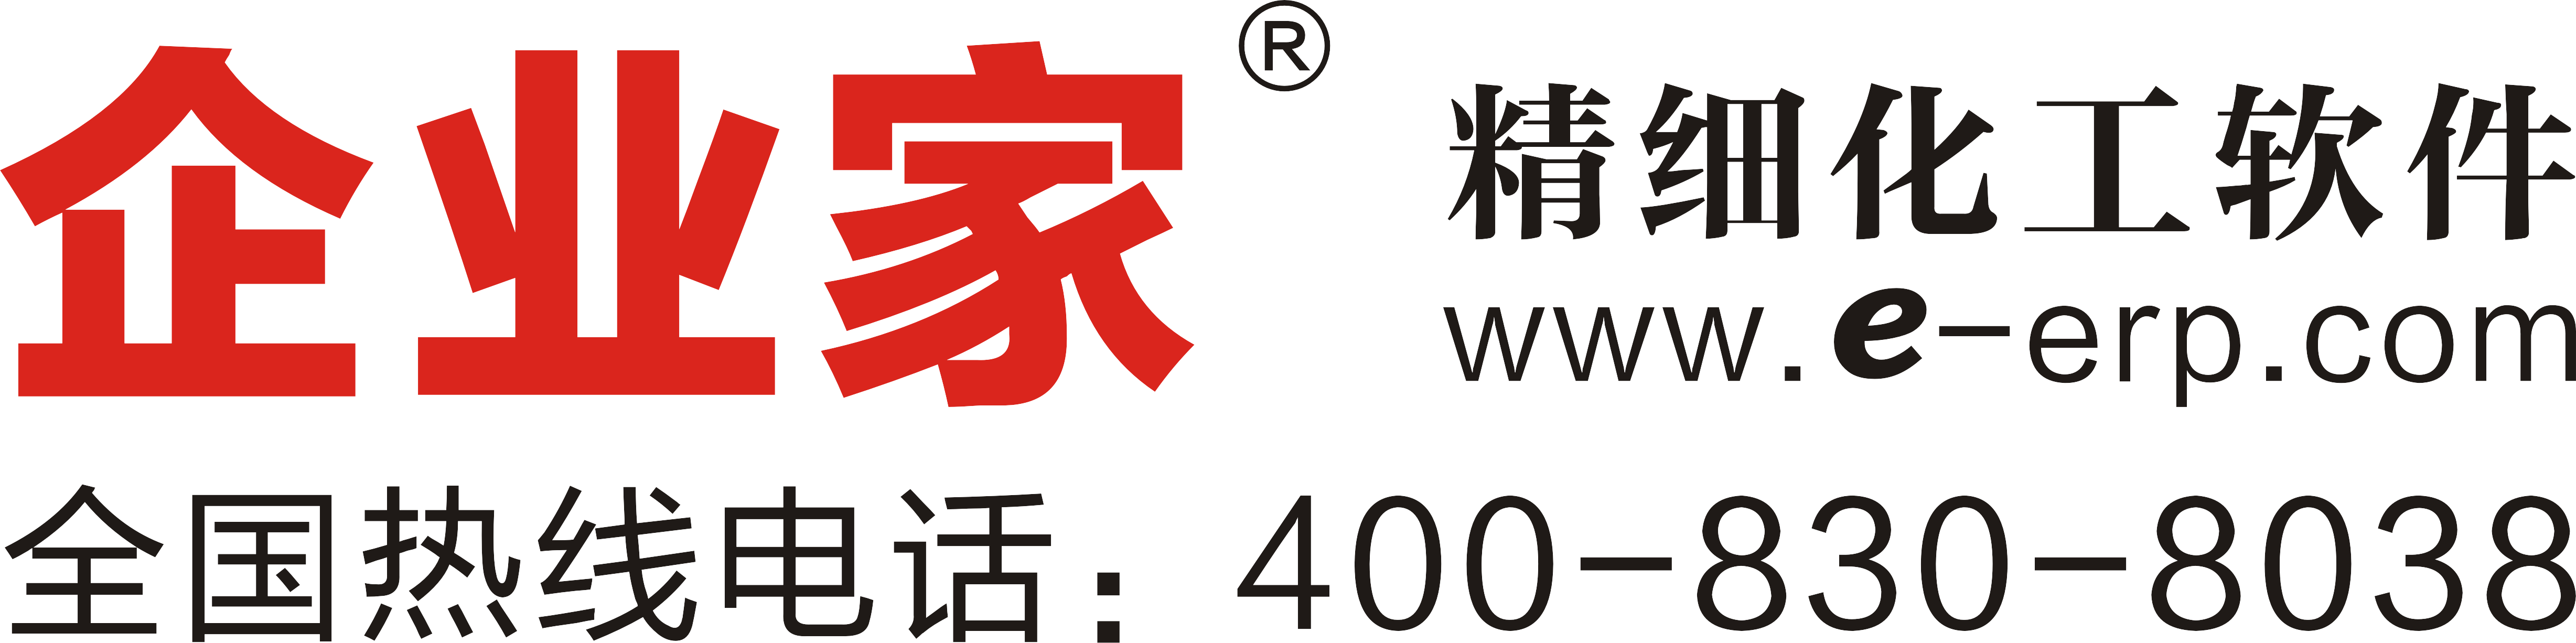 Shanghai Entrepreneur Software Co., Ltd._logo